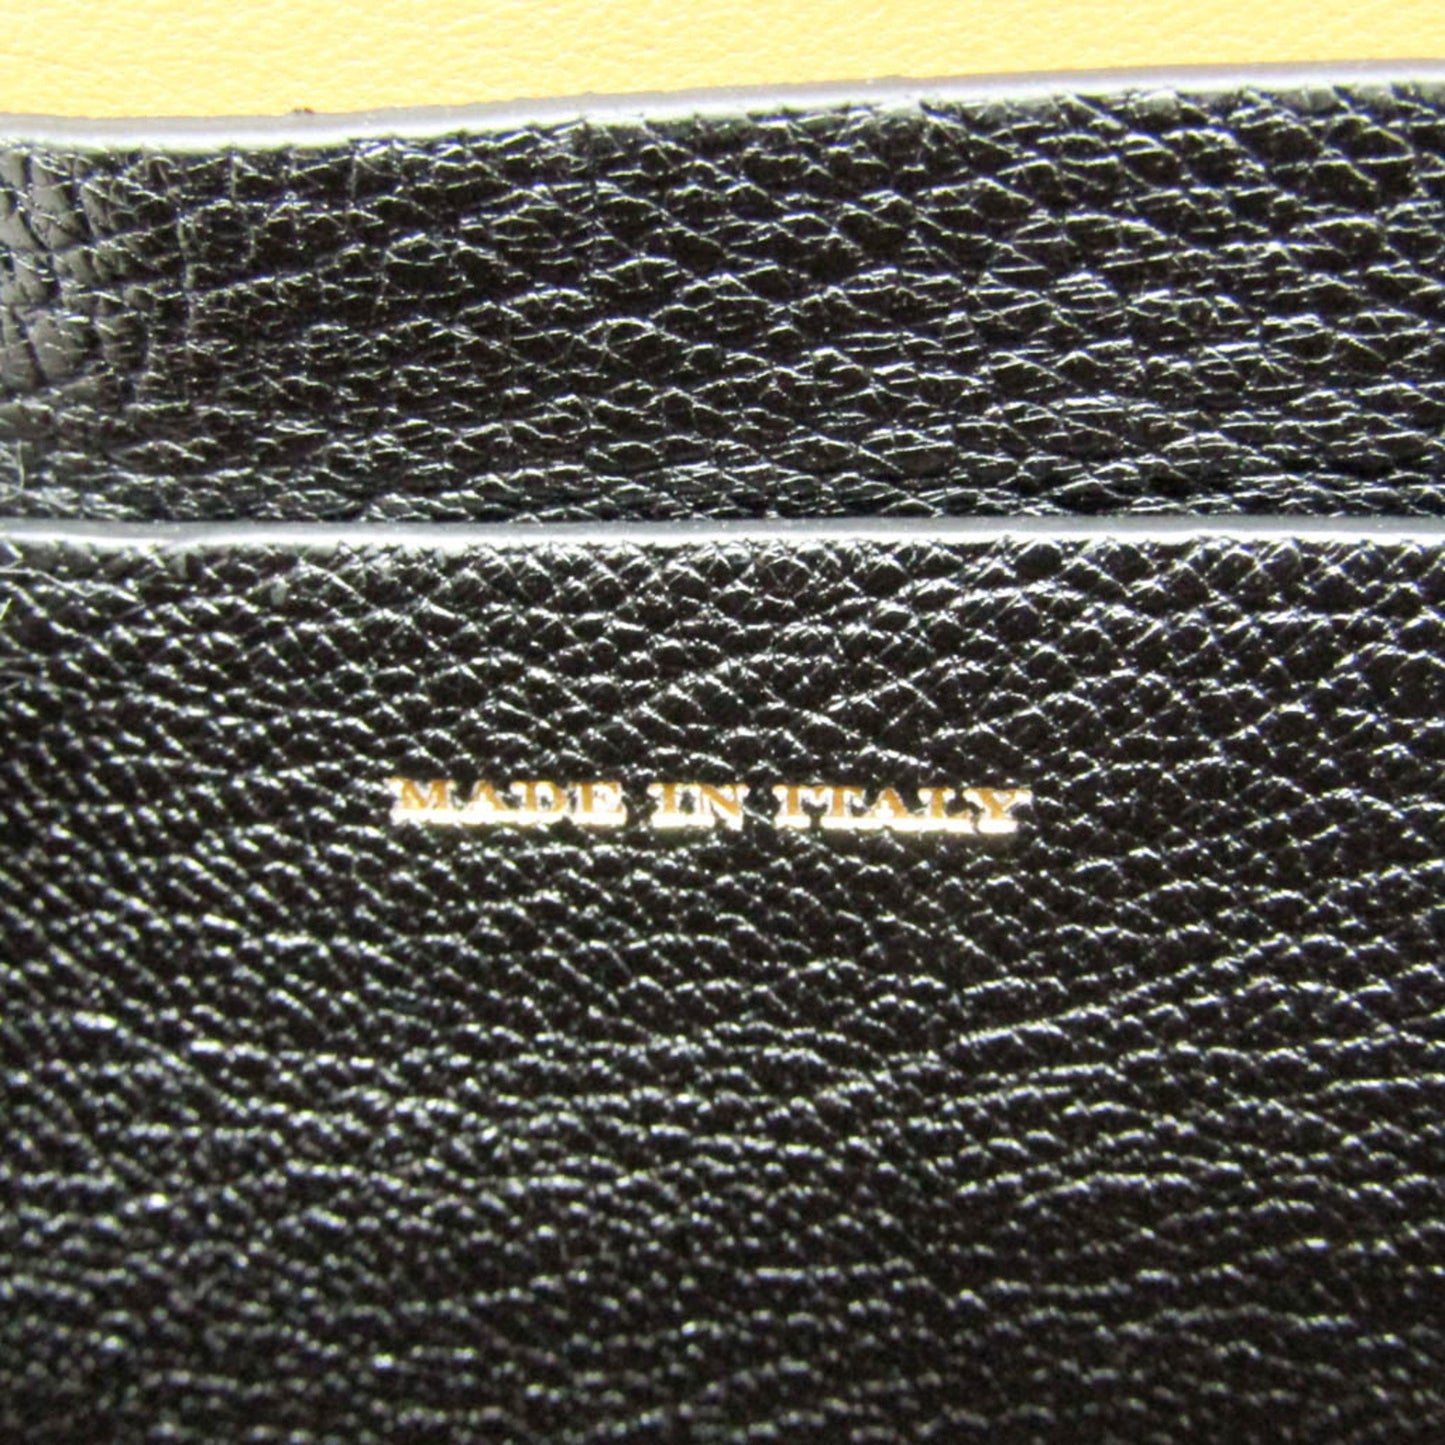 BURBERRY Women's Black Leather Shoulder Bag in Black